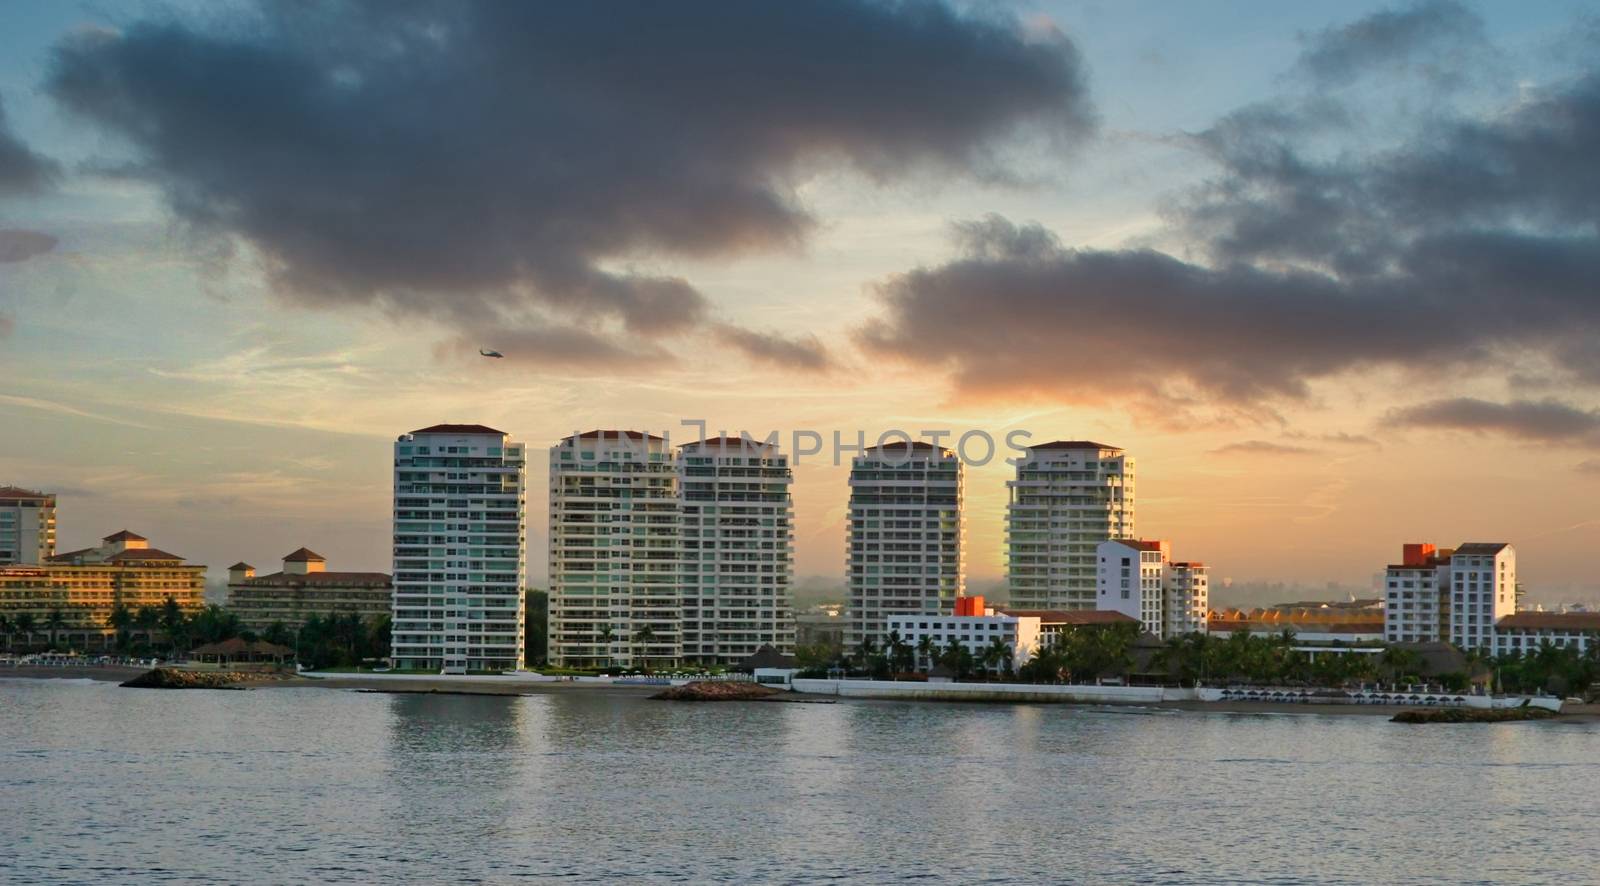 Coastal Condo Towers at Dawn by dbvirago